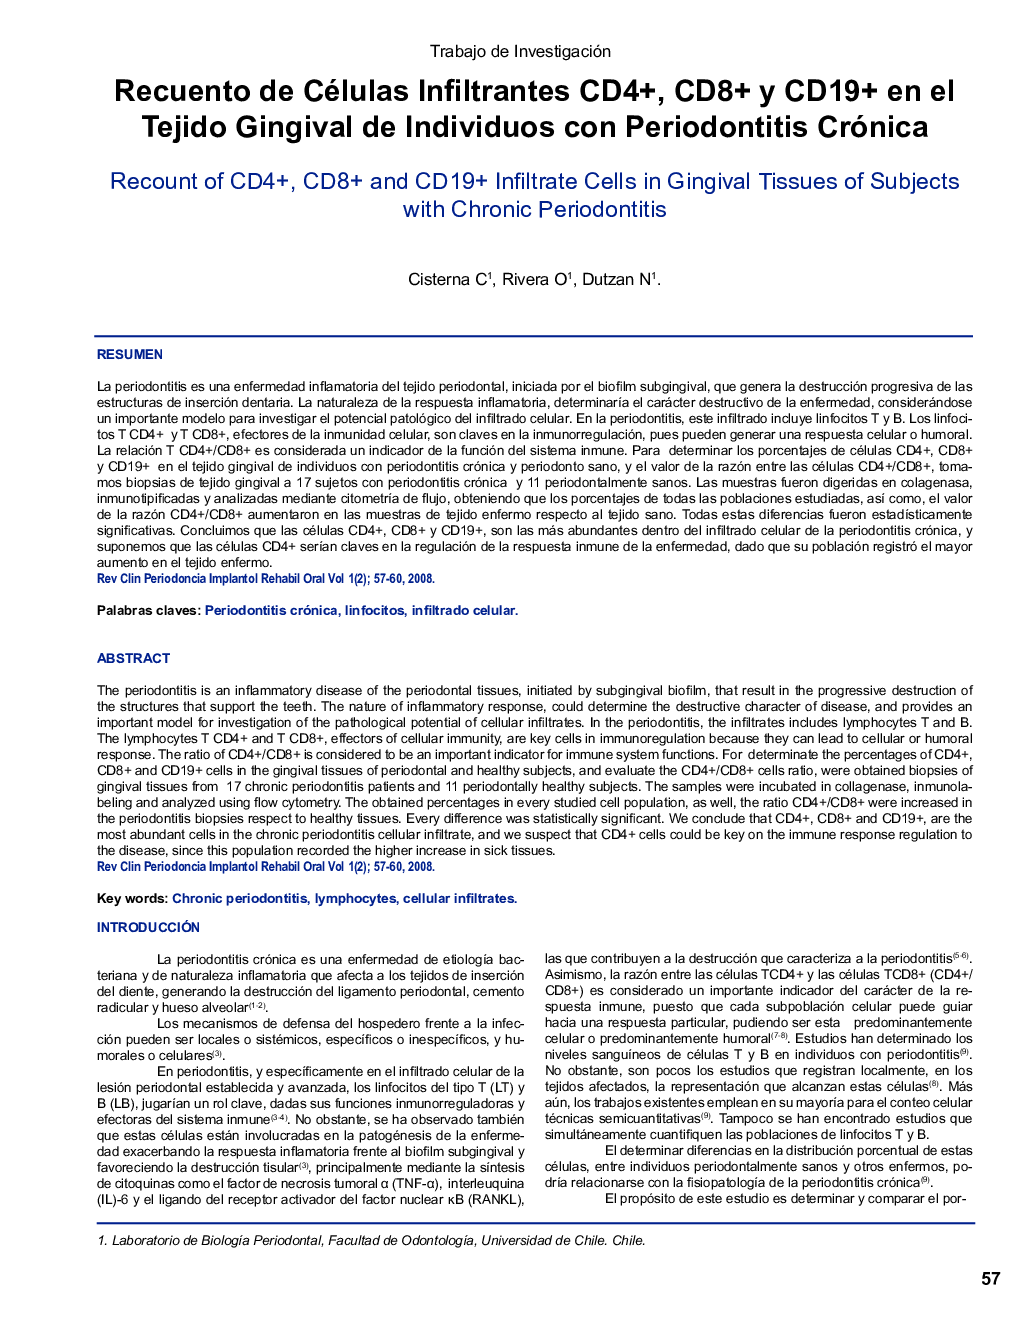 Recuento de Células Infiltrantes CD4+, CD8+ y CD19+ en el Tejido Gingival de Individuos con Periodontitis Crónica